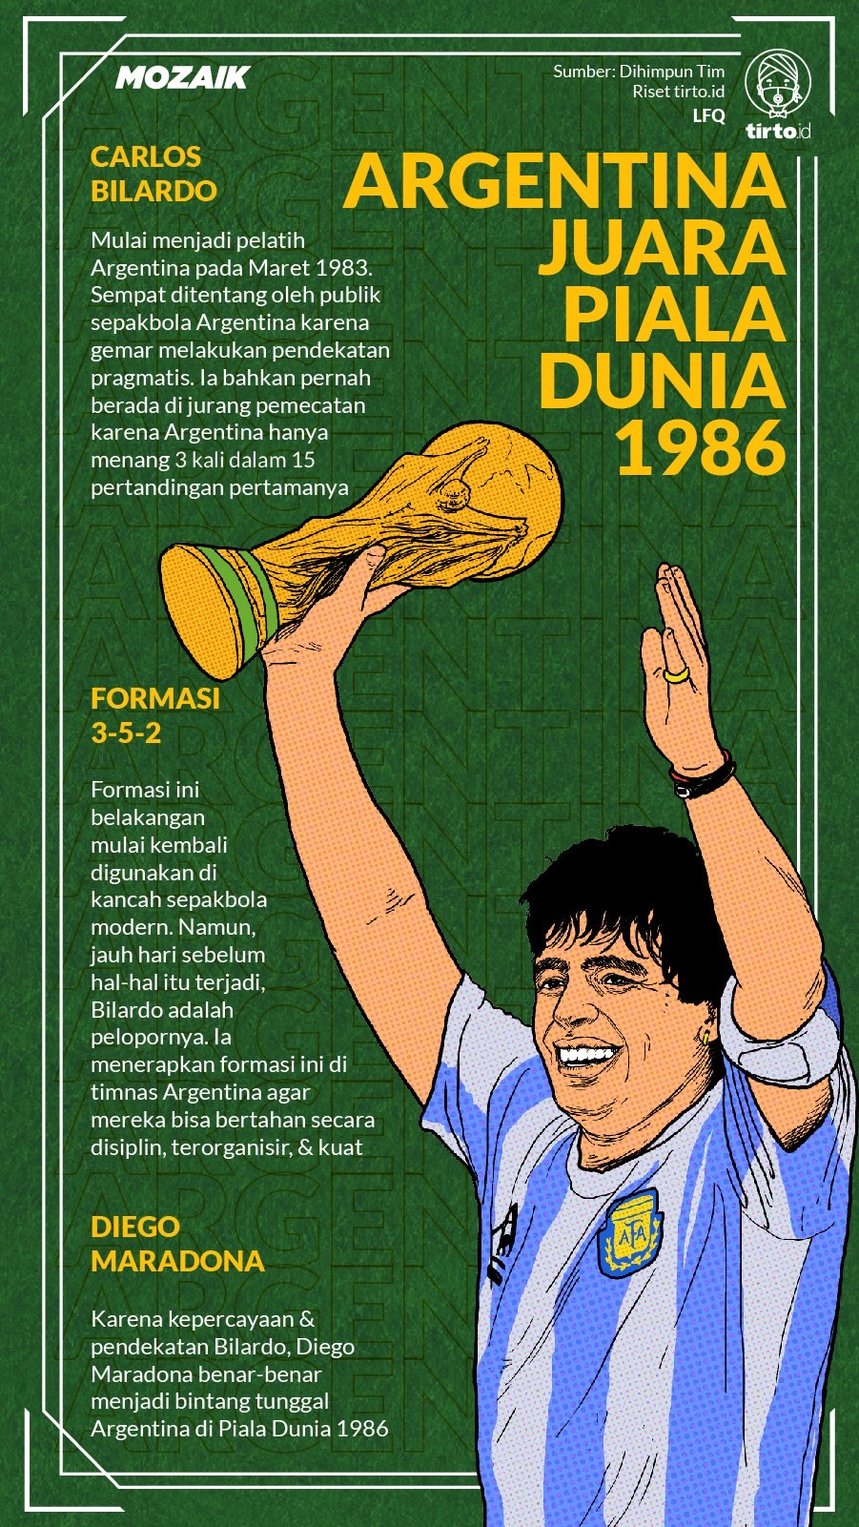 Infografik Mozaik Argentina Juara Piala Dunia 1986